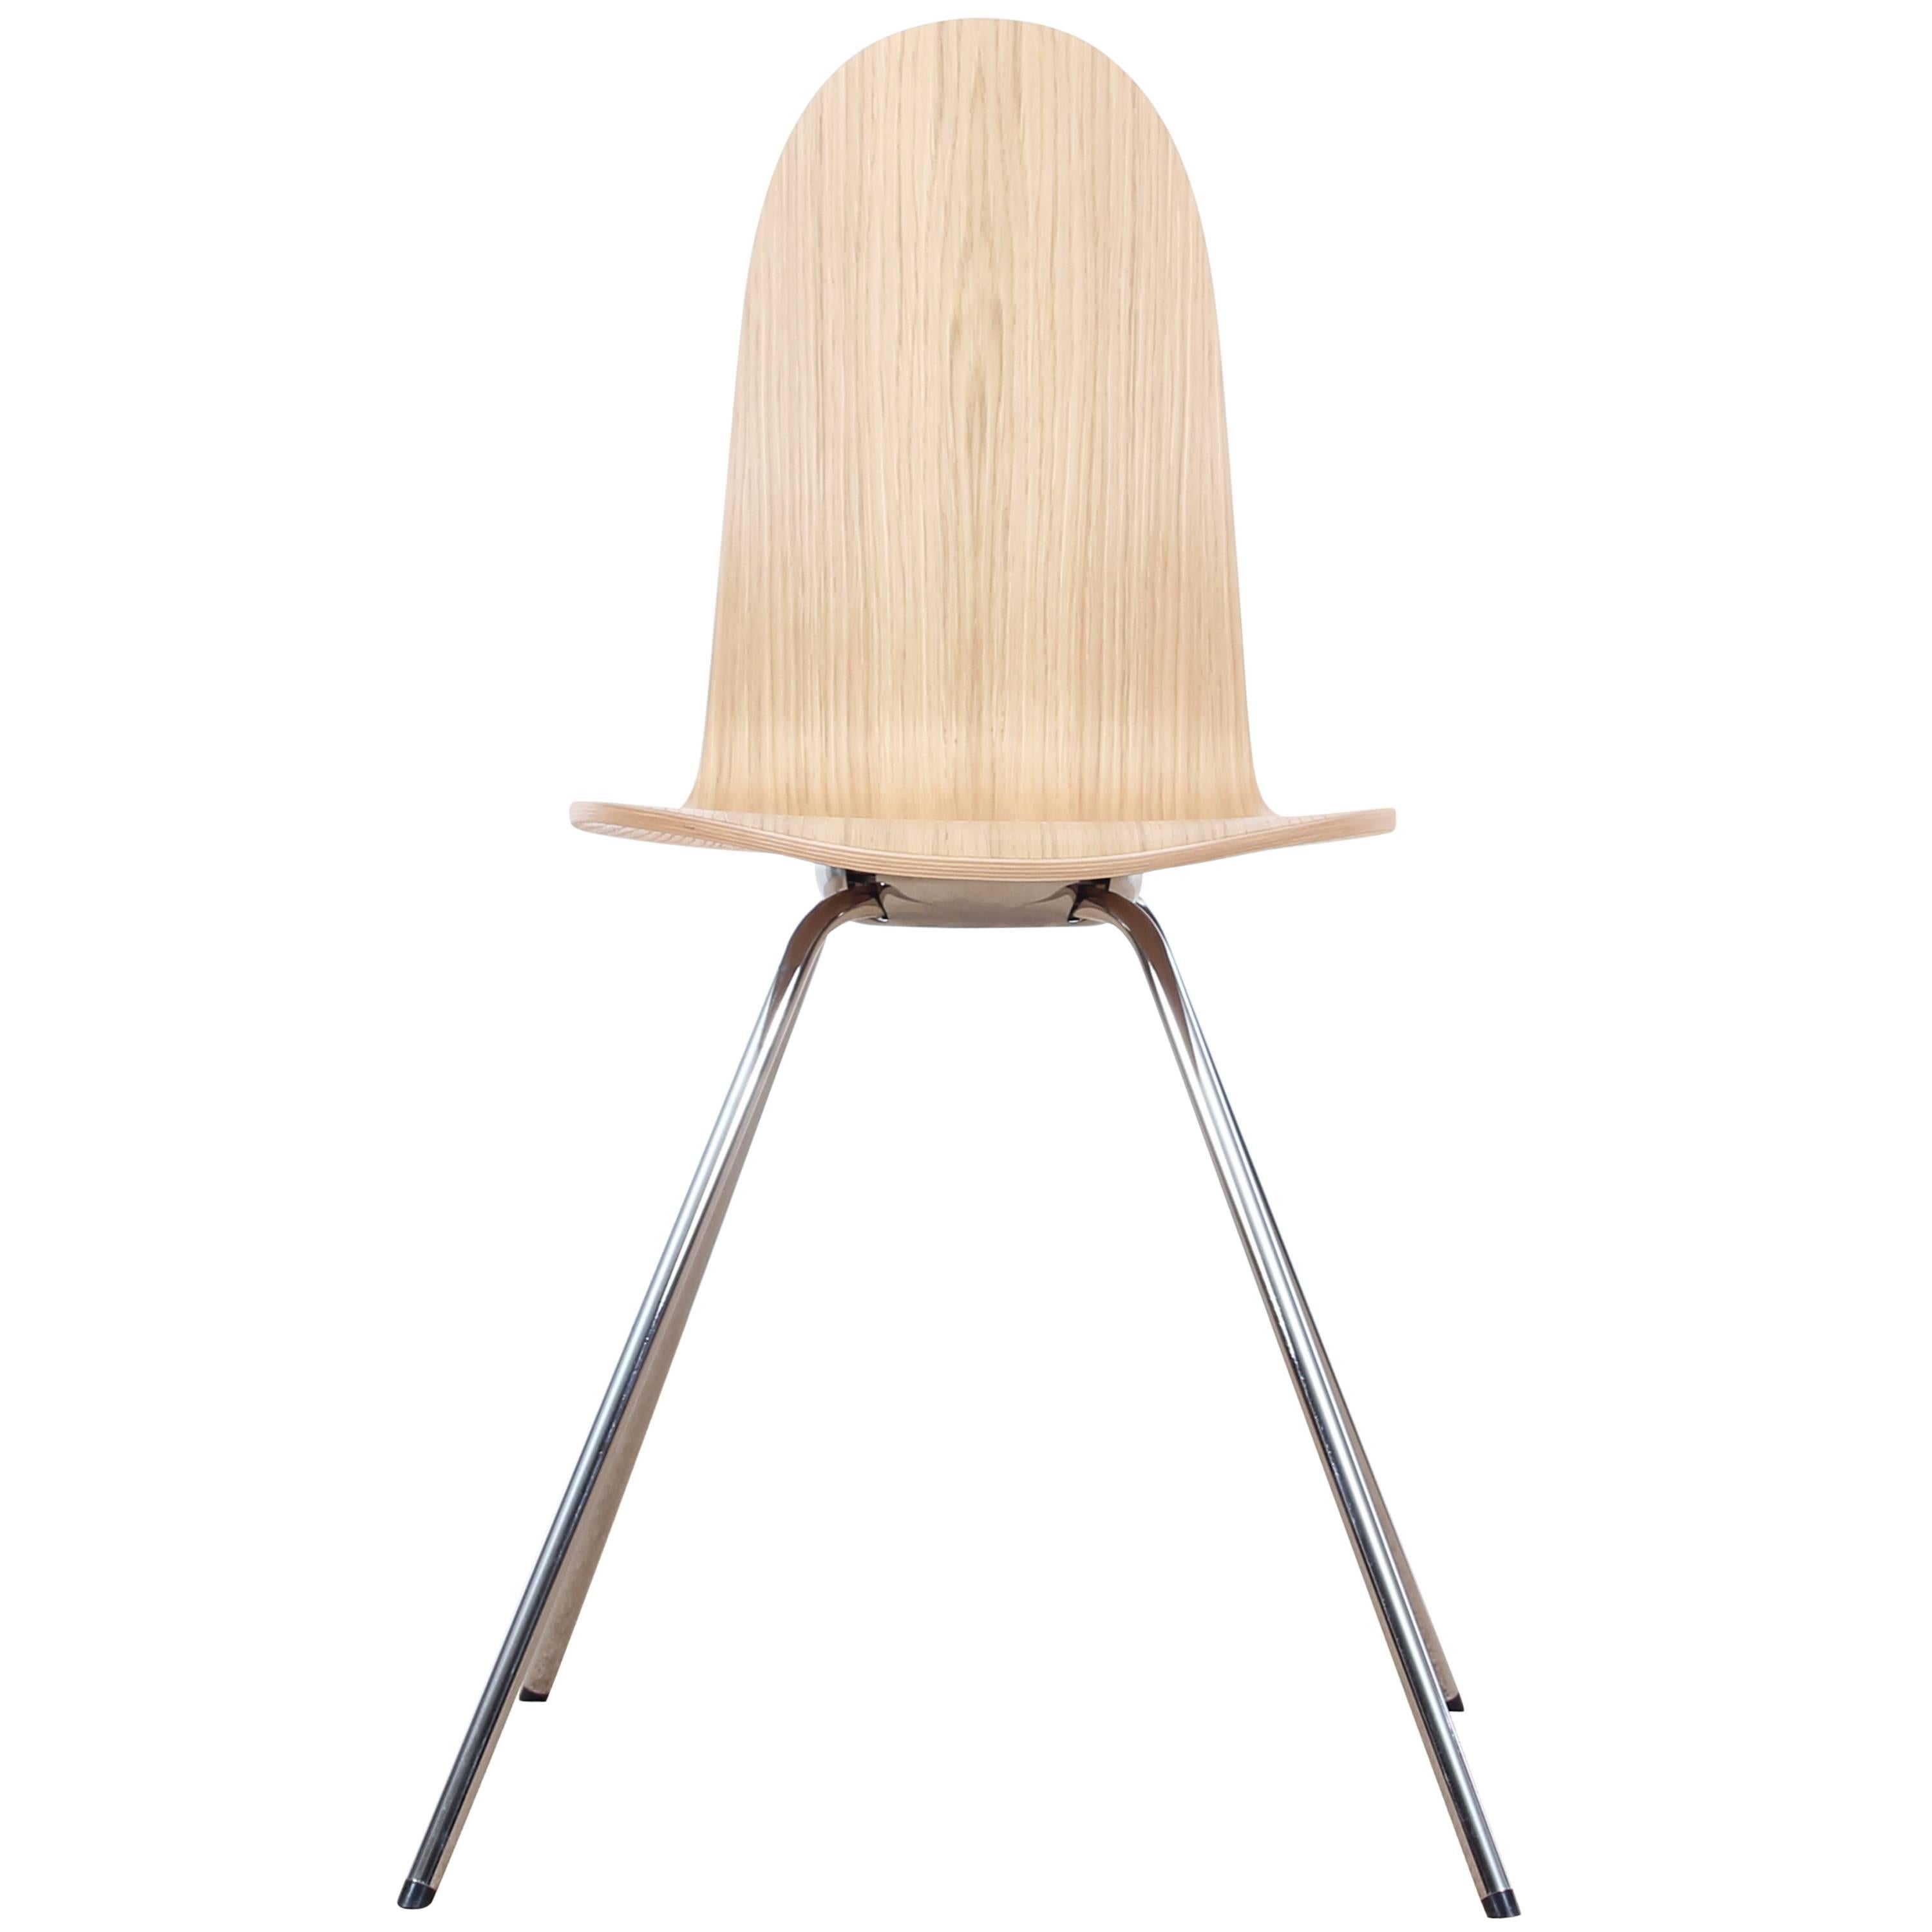 Tongue-Stuhl aus Esche von Arne Jacobsen, neu erschienen im Angebot